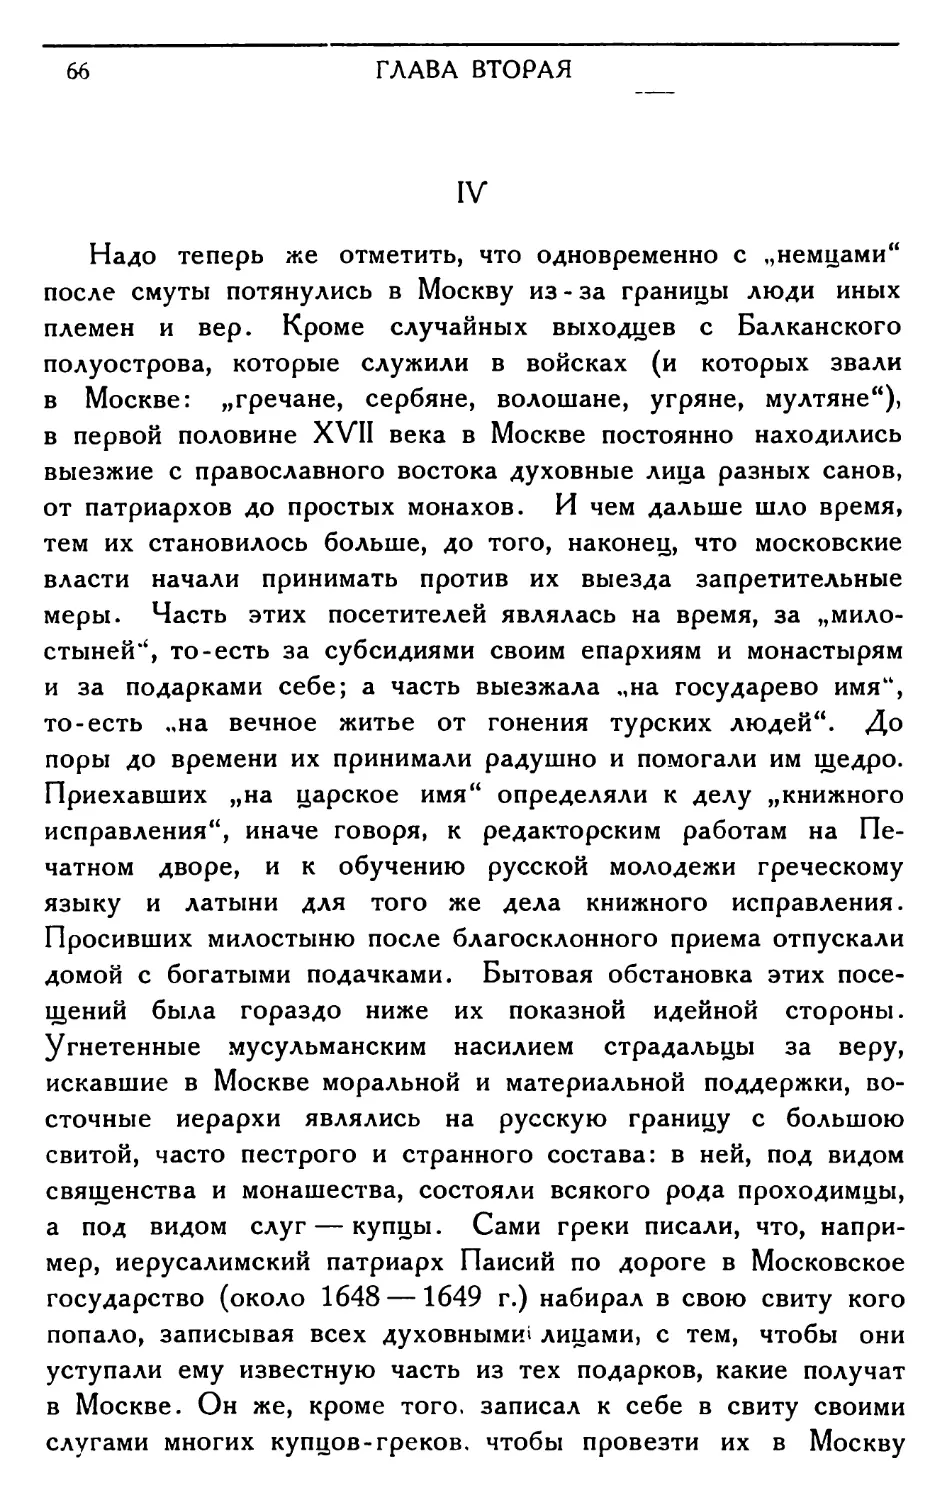 IV. Православные приходцы с востока и Украины